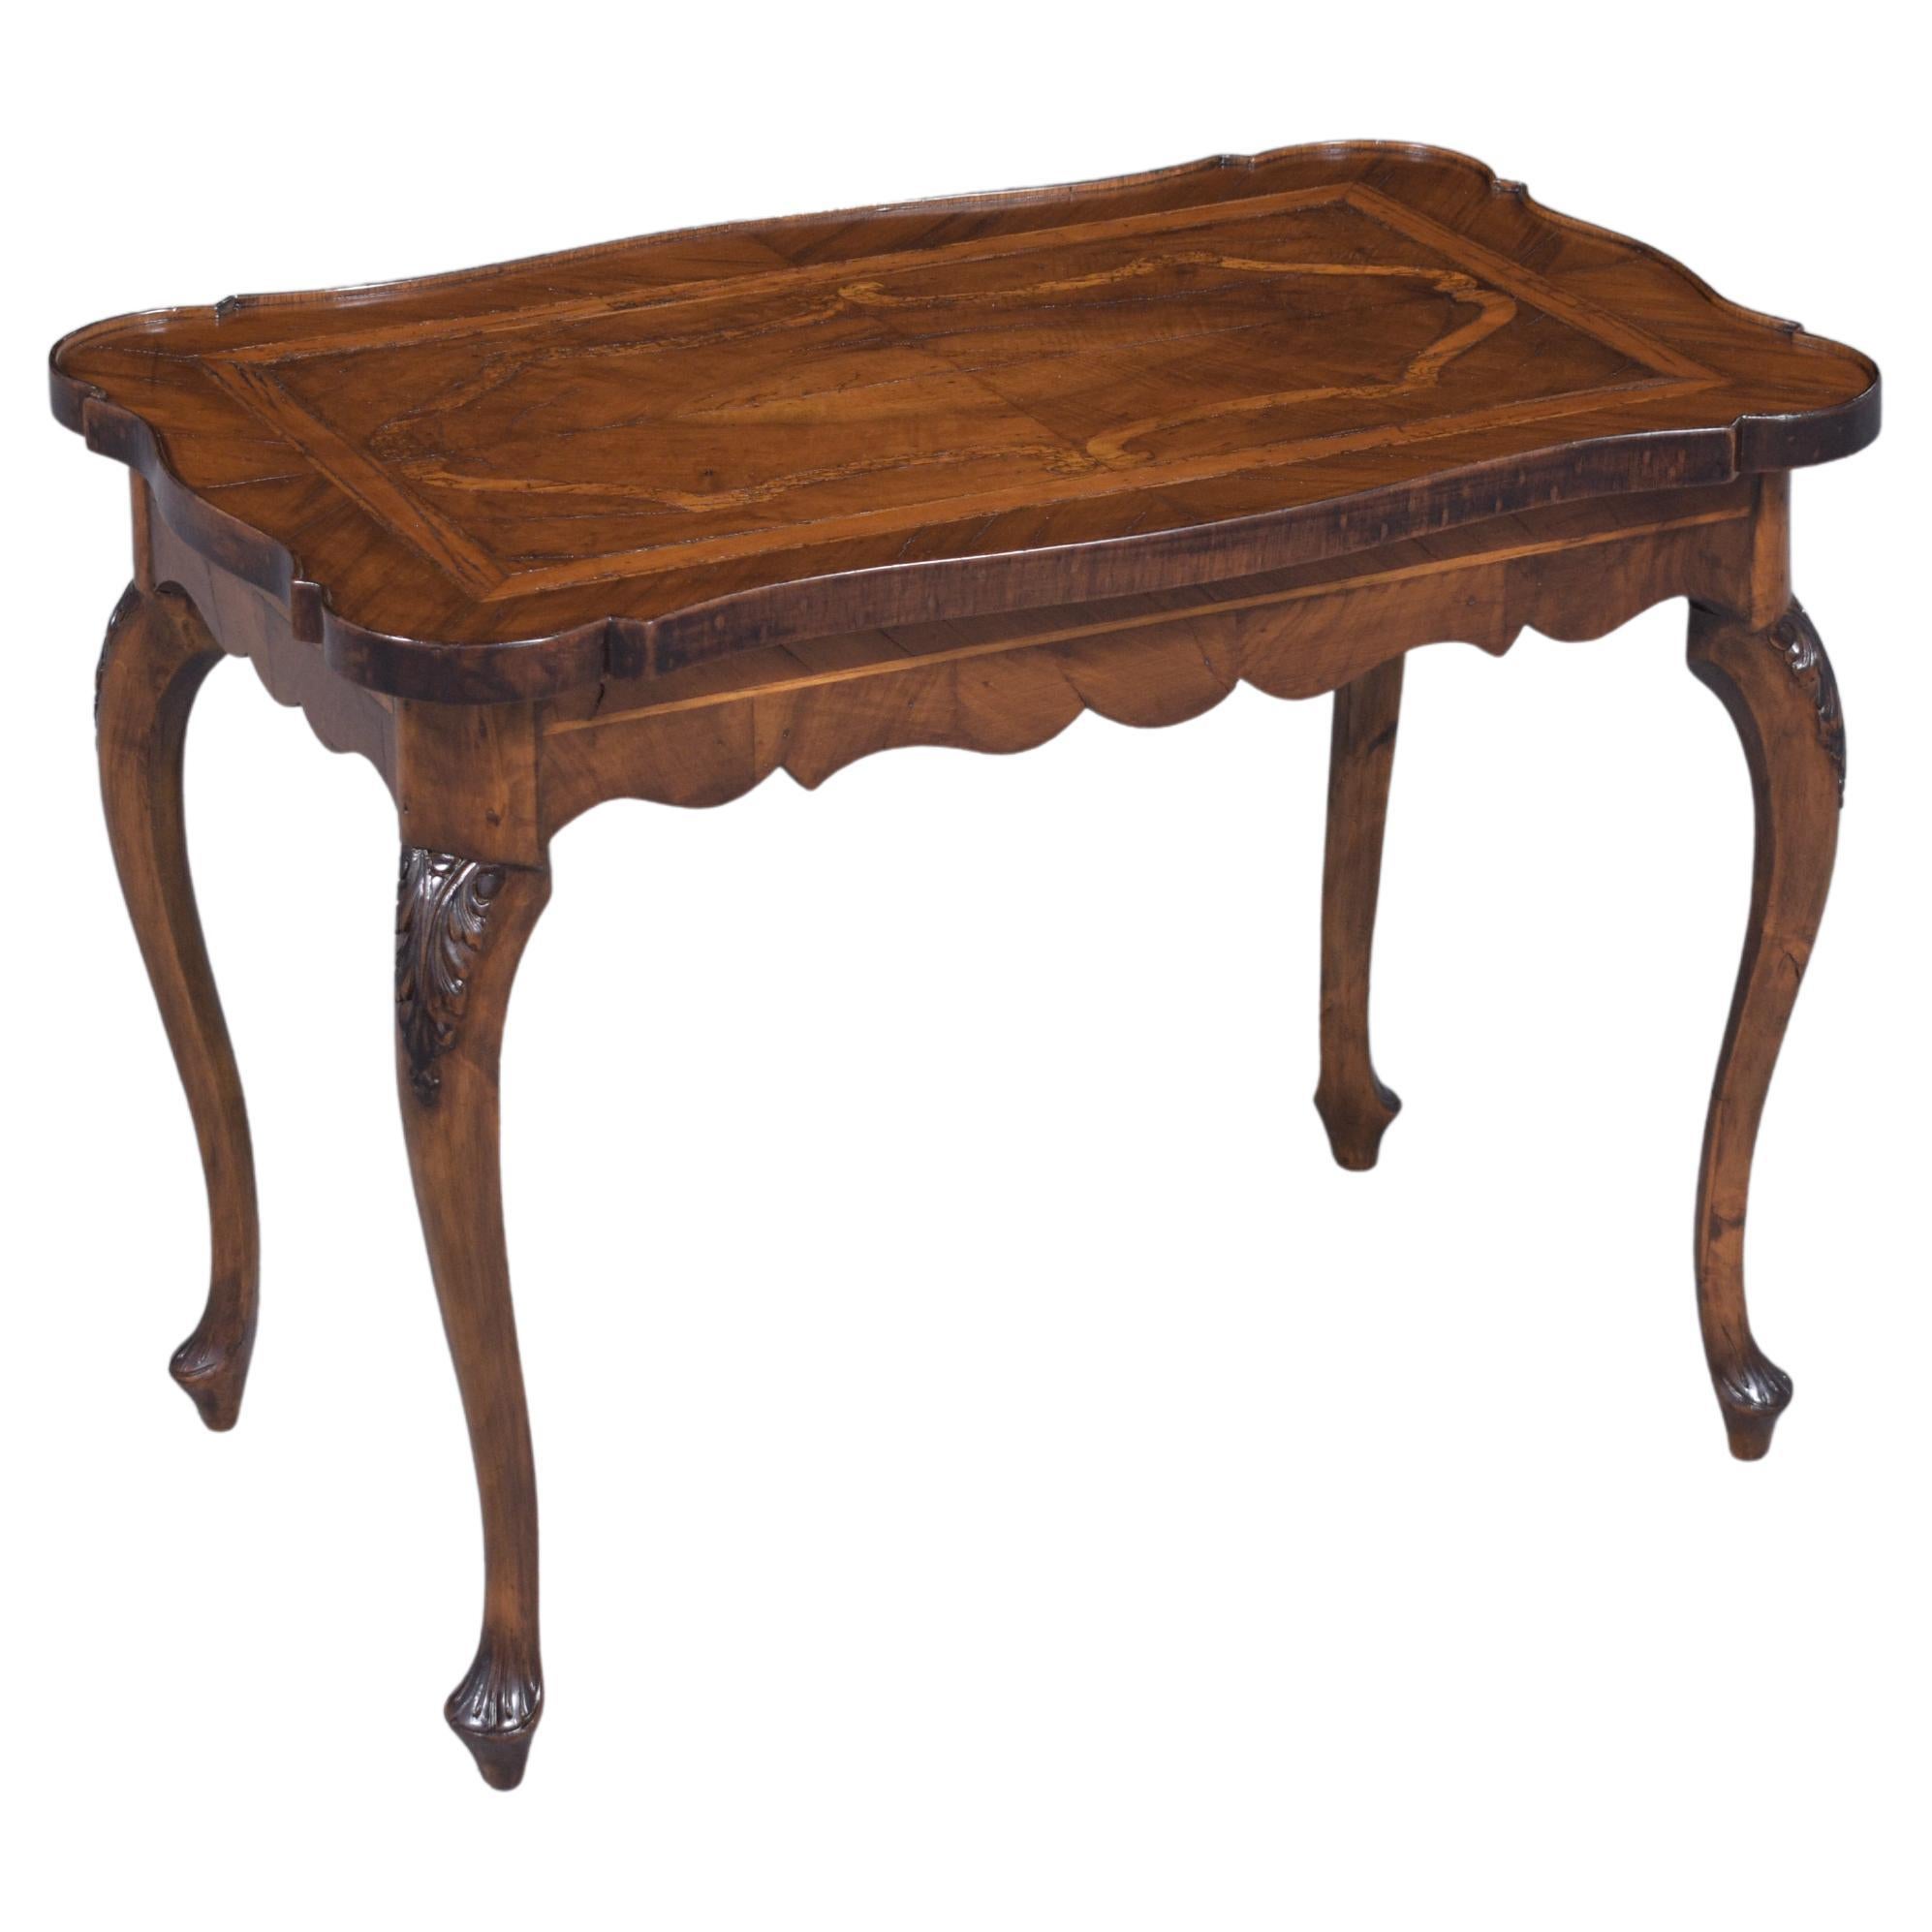 Table d'appoint en noyer anglais de la fin du XIXe siècle : Elegance antique restaurée